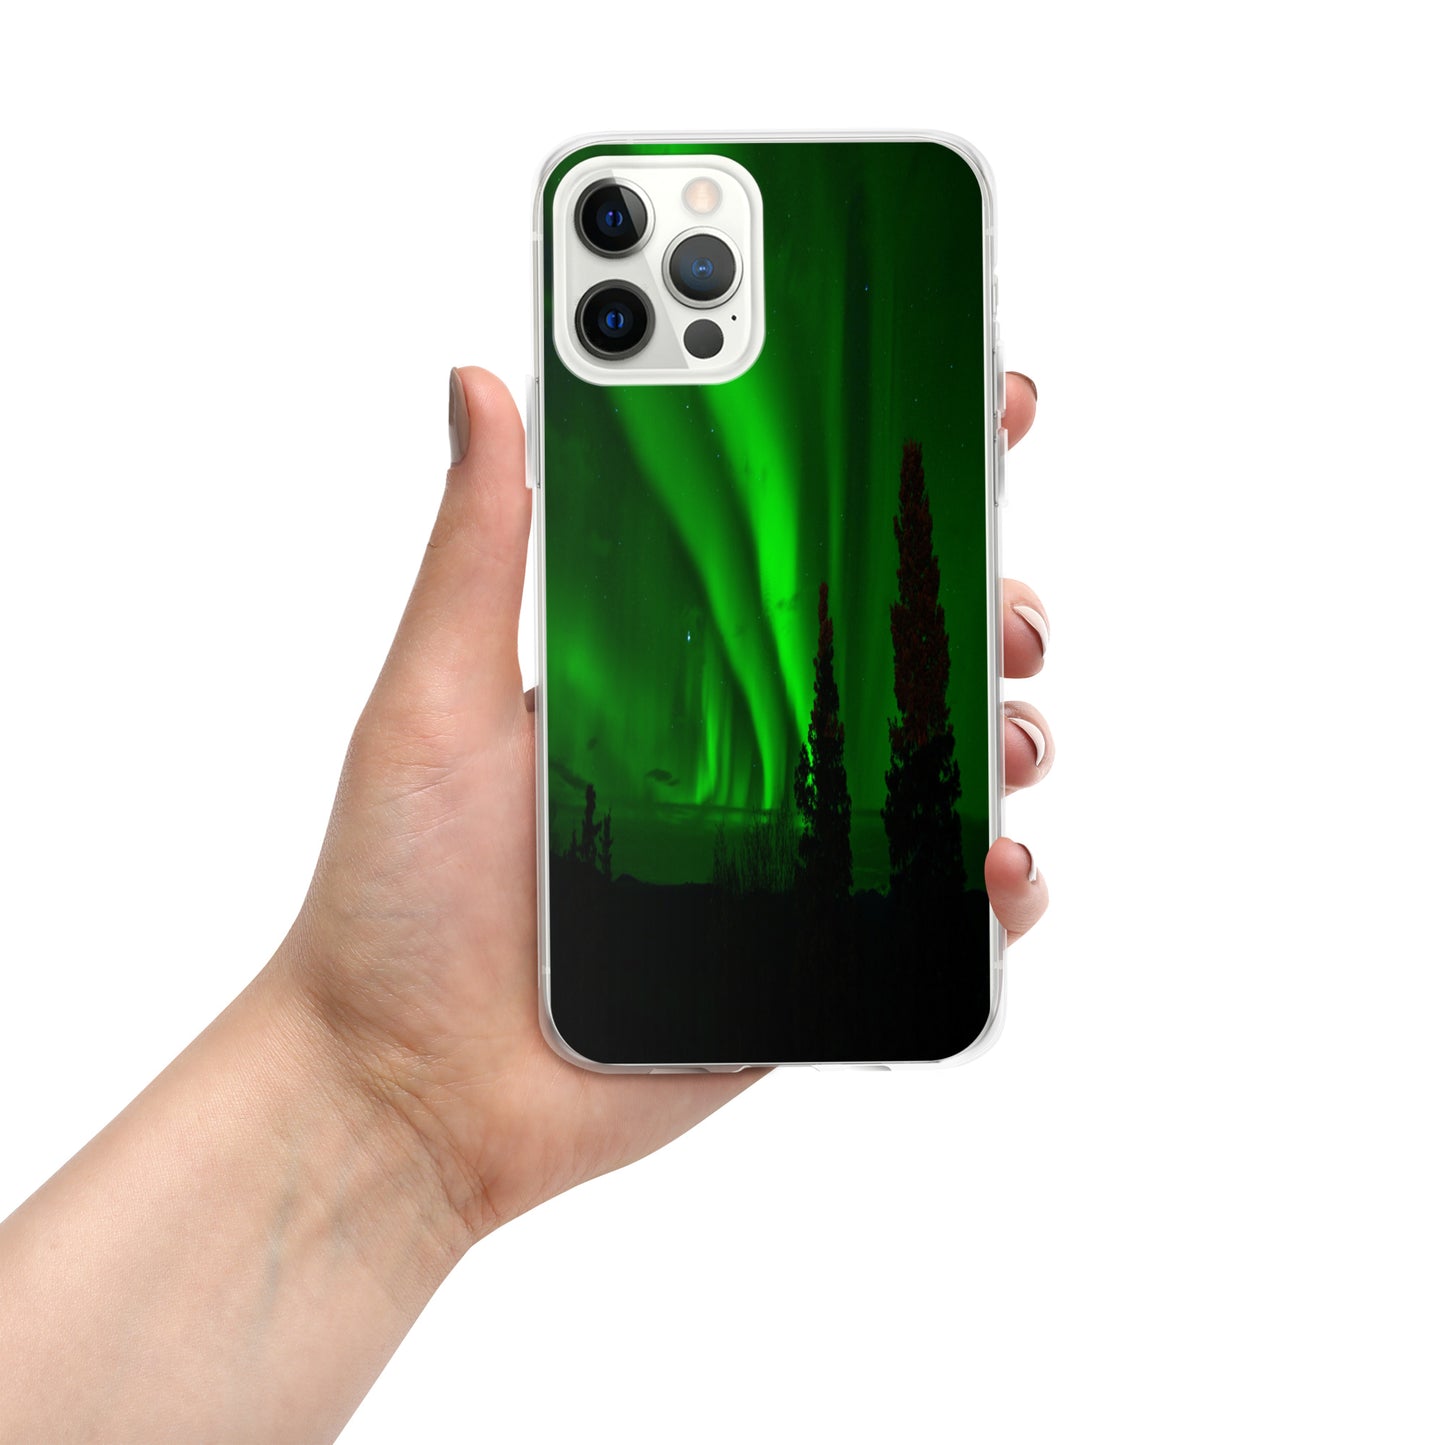 Unique Aurora Borealis iPhone Cover Case - Northern Light Phone Cover Case - Clear Case for iPhone - Perfect Aurora Lovers Gift 10